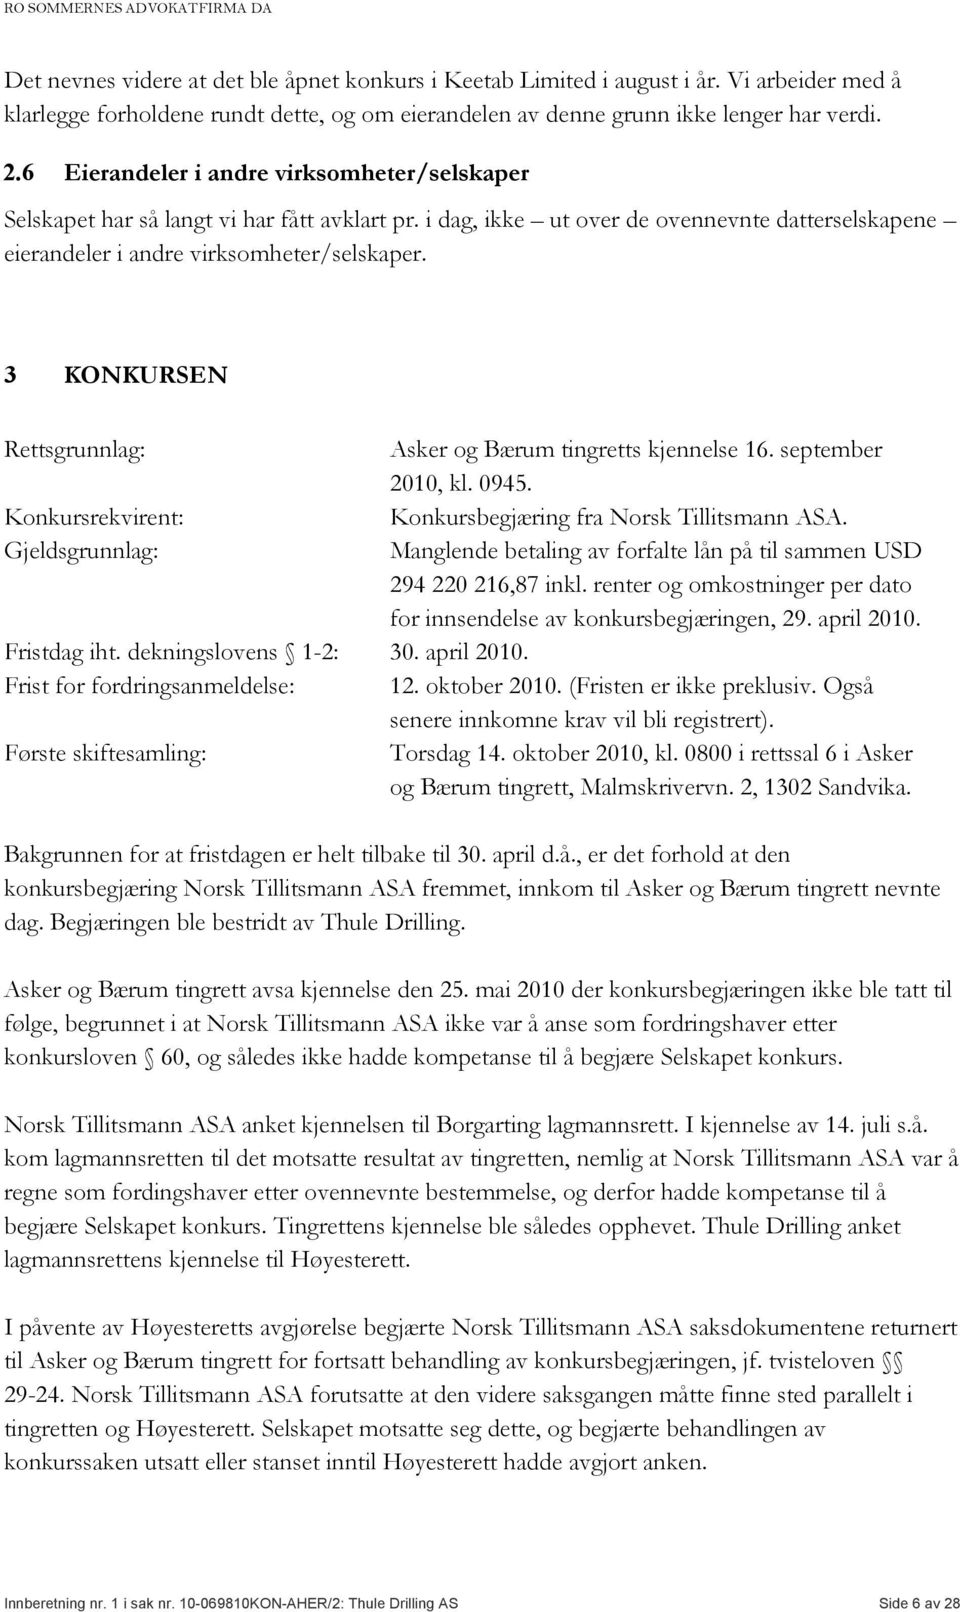 3 KONKURSEN Rettsgrunnlag: Asker og Bærum tingretts kjennelse 16. september 2010, kl. 0945. Konkursrekvirent: Konkursbegjæring fra Norsk Tillitsmann ASA.